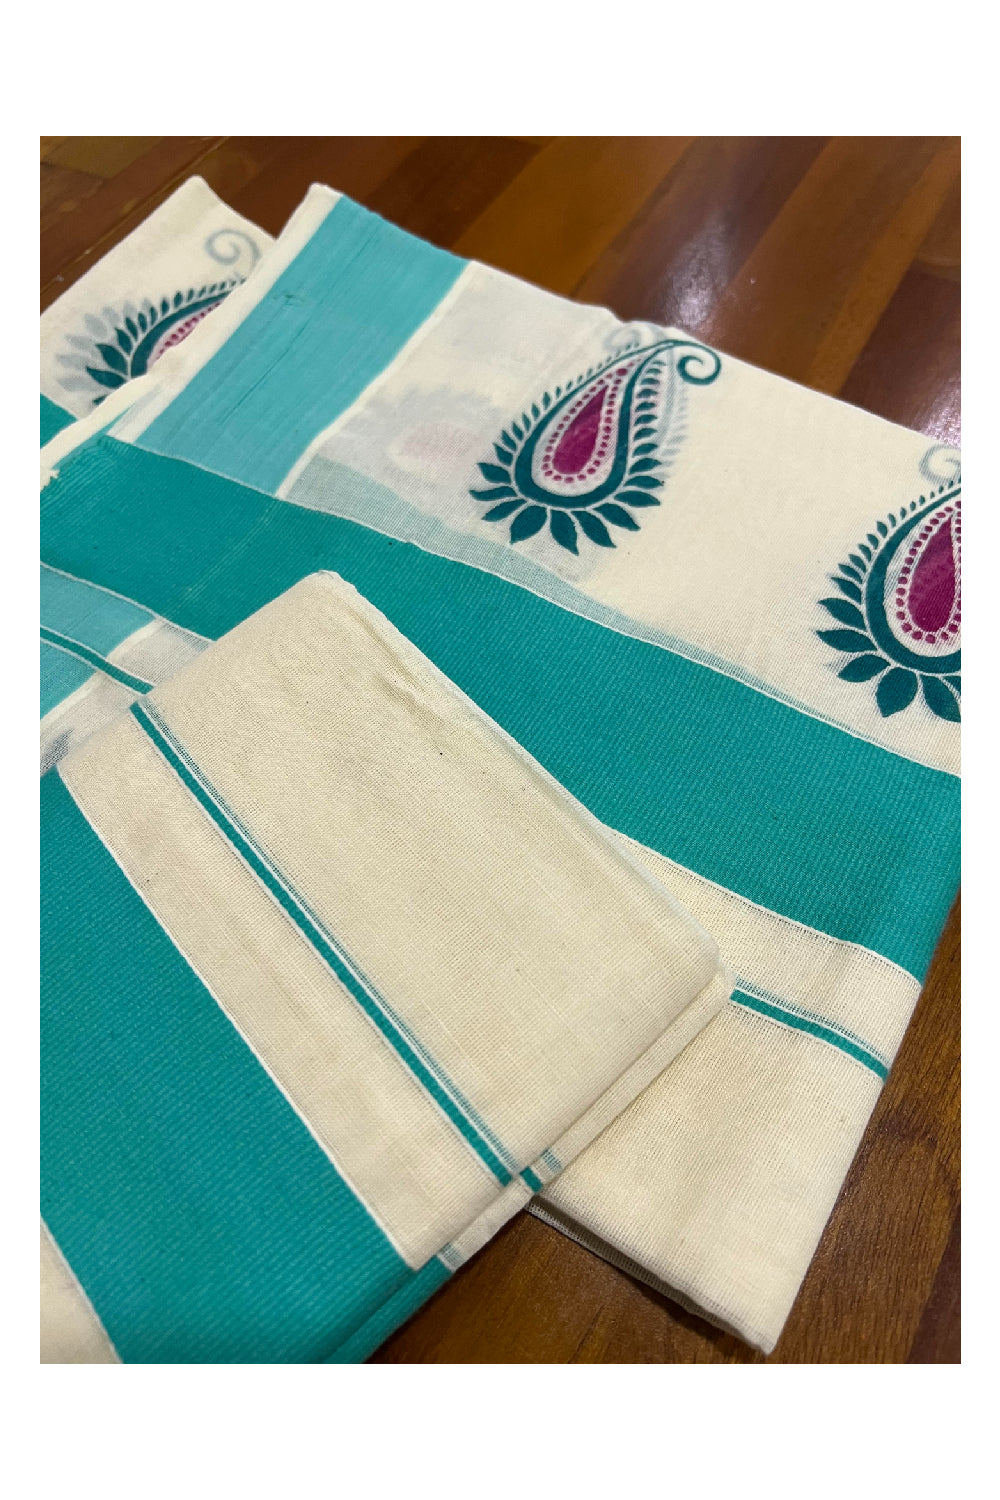 Kerala Cotton Single Mundum Neriyathum (Set Mundu) with Block Prints on Turquoise Border 2.80 Mtrs